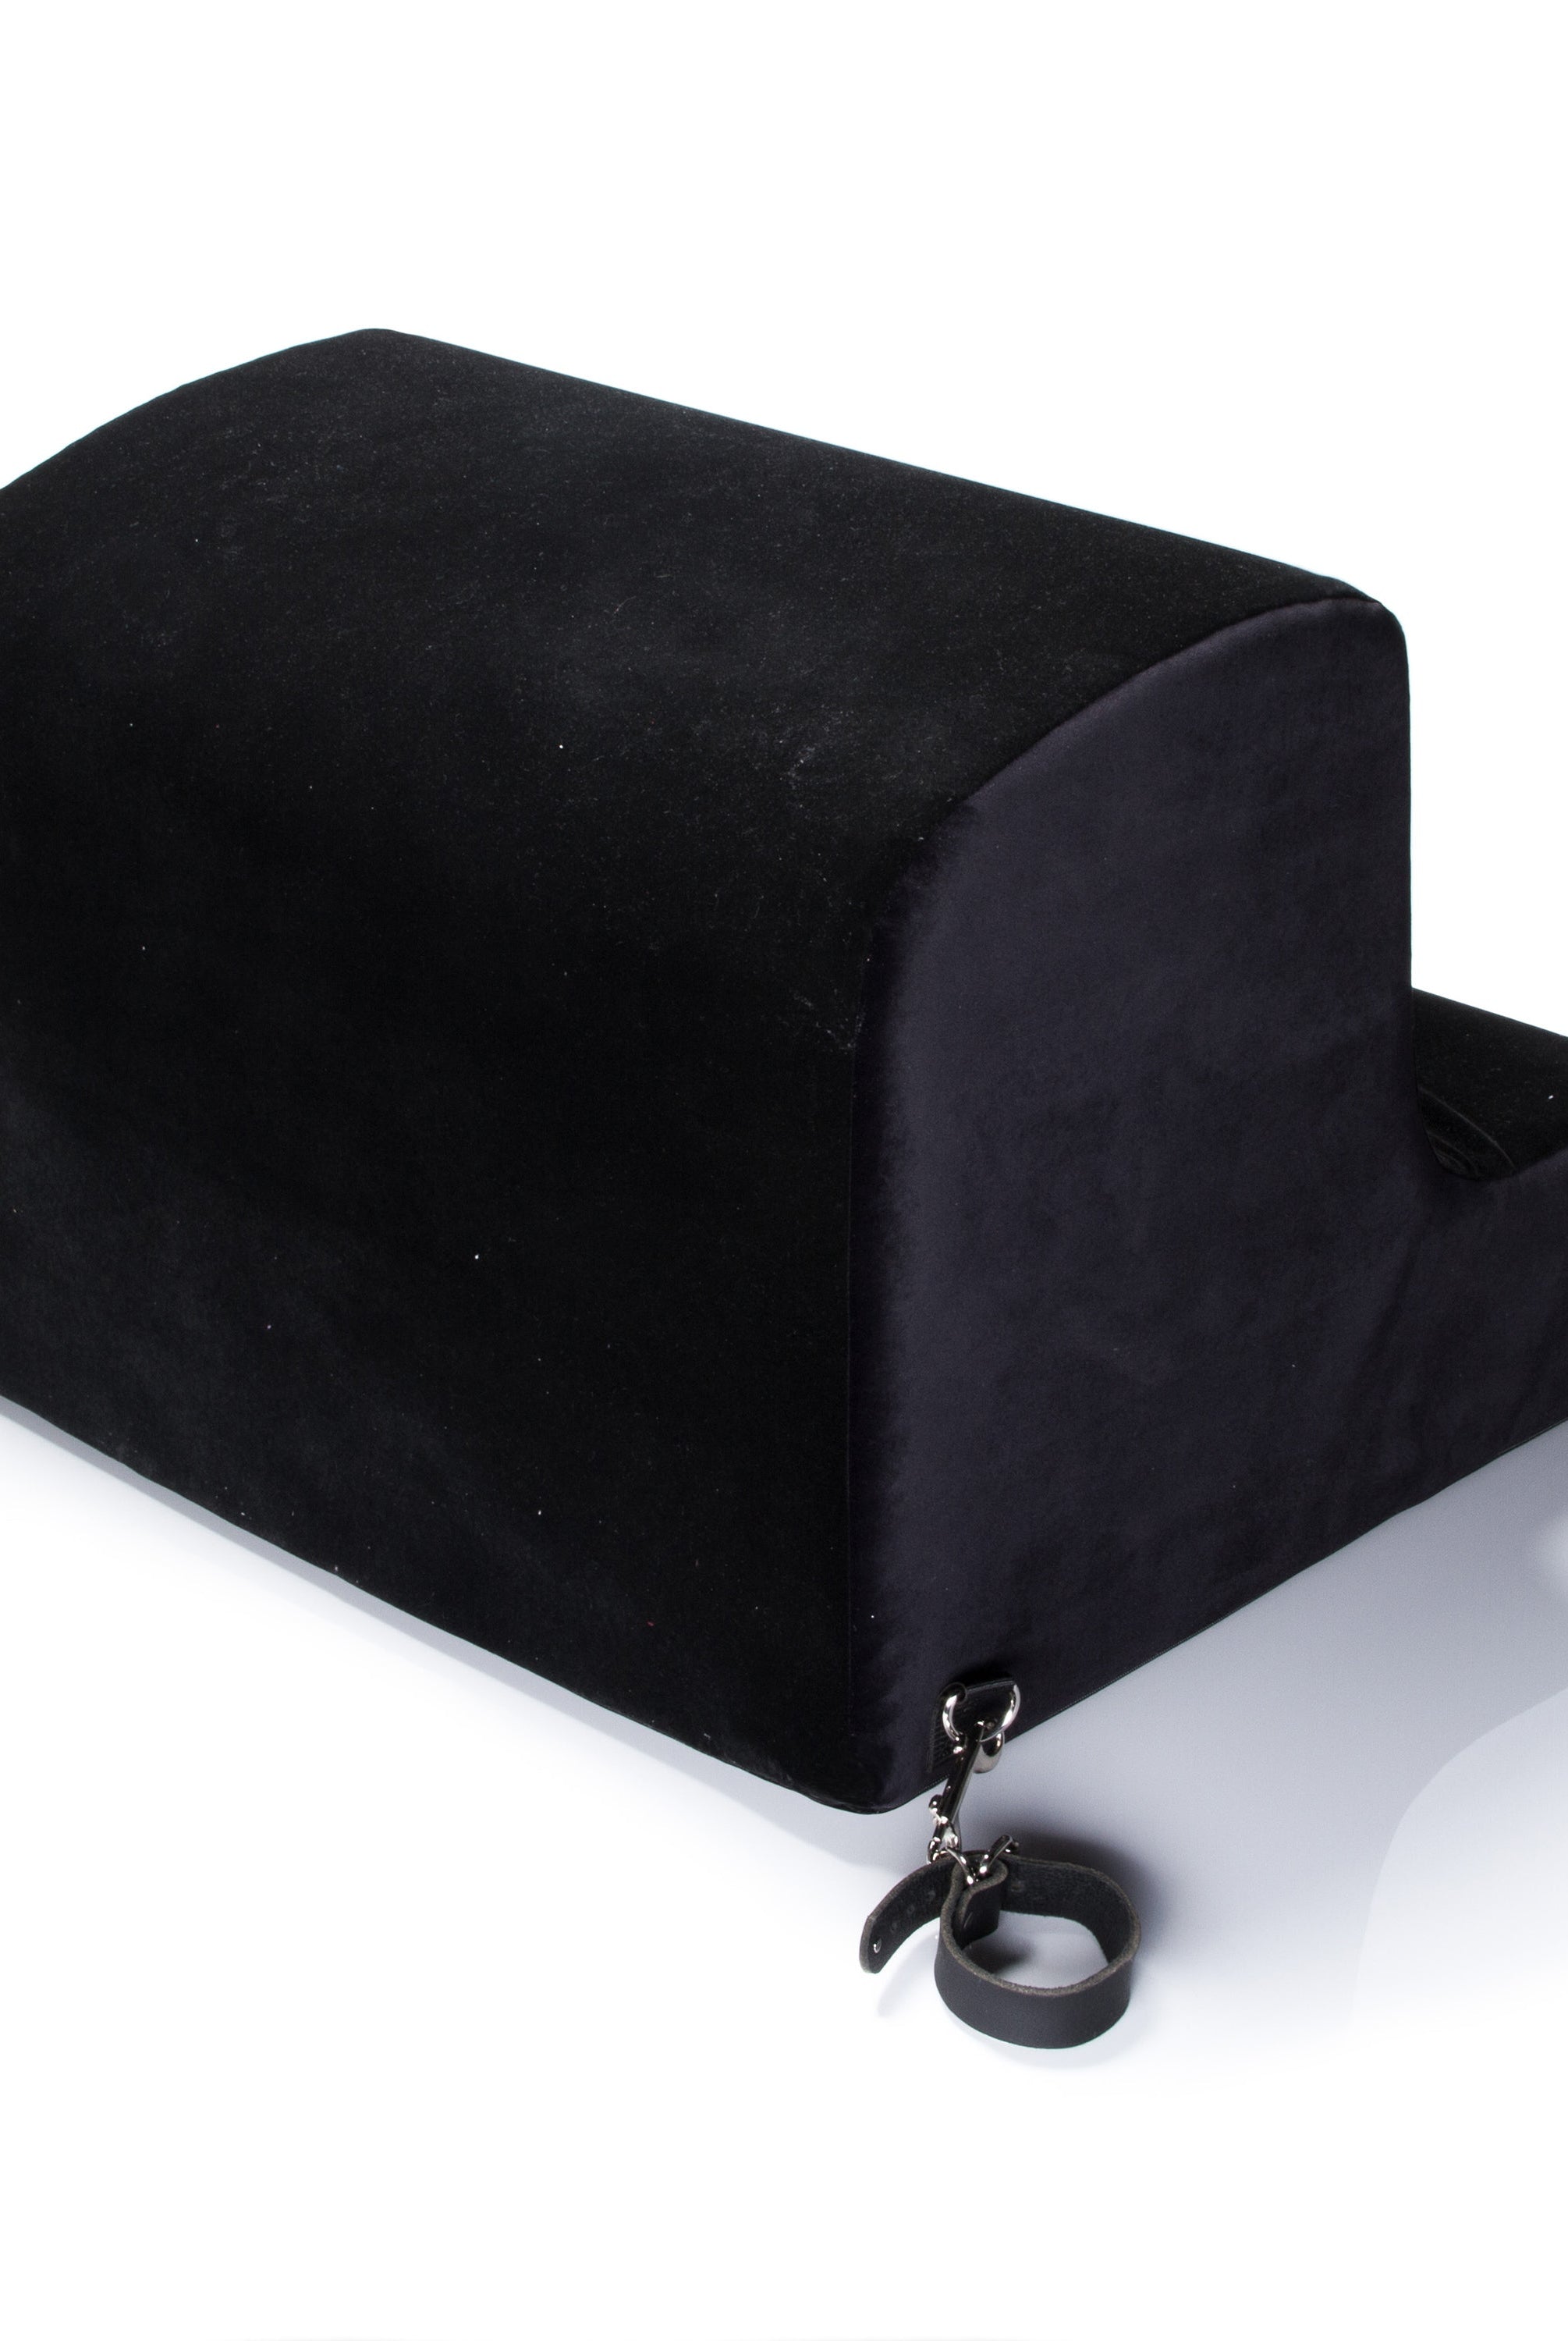 Obéir Spanking Bench W/Cuffs Microfiber - non retail box - ACME Pleasure